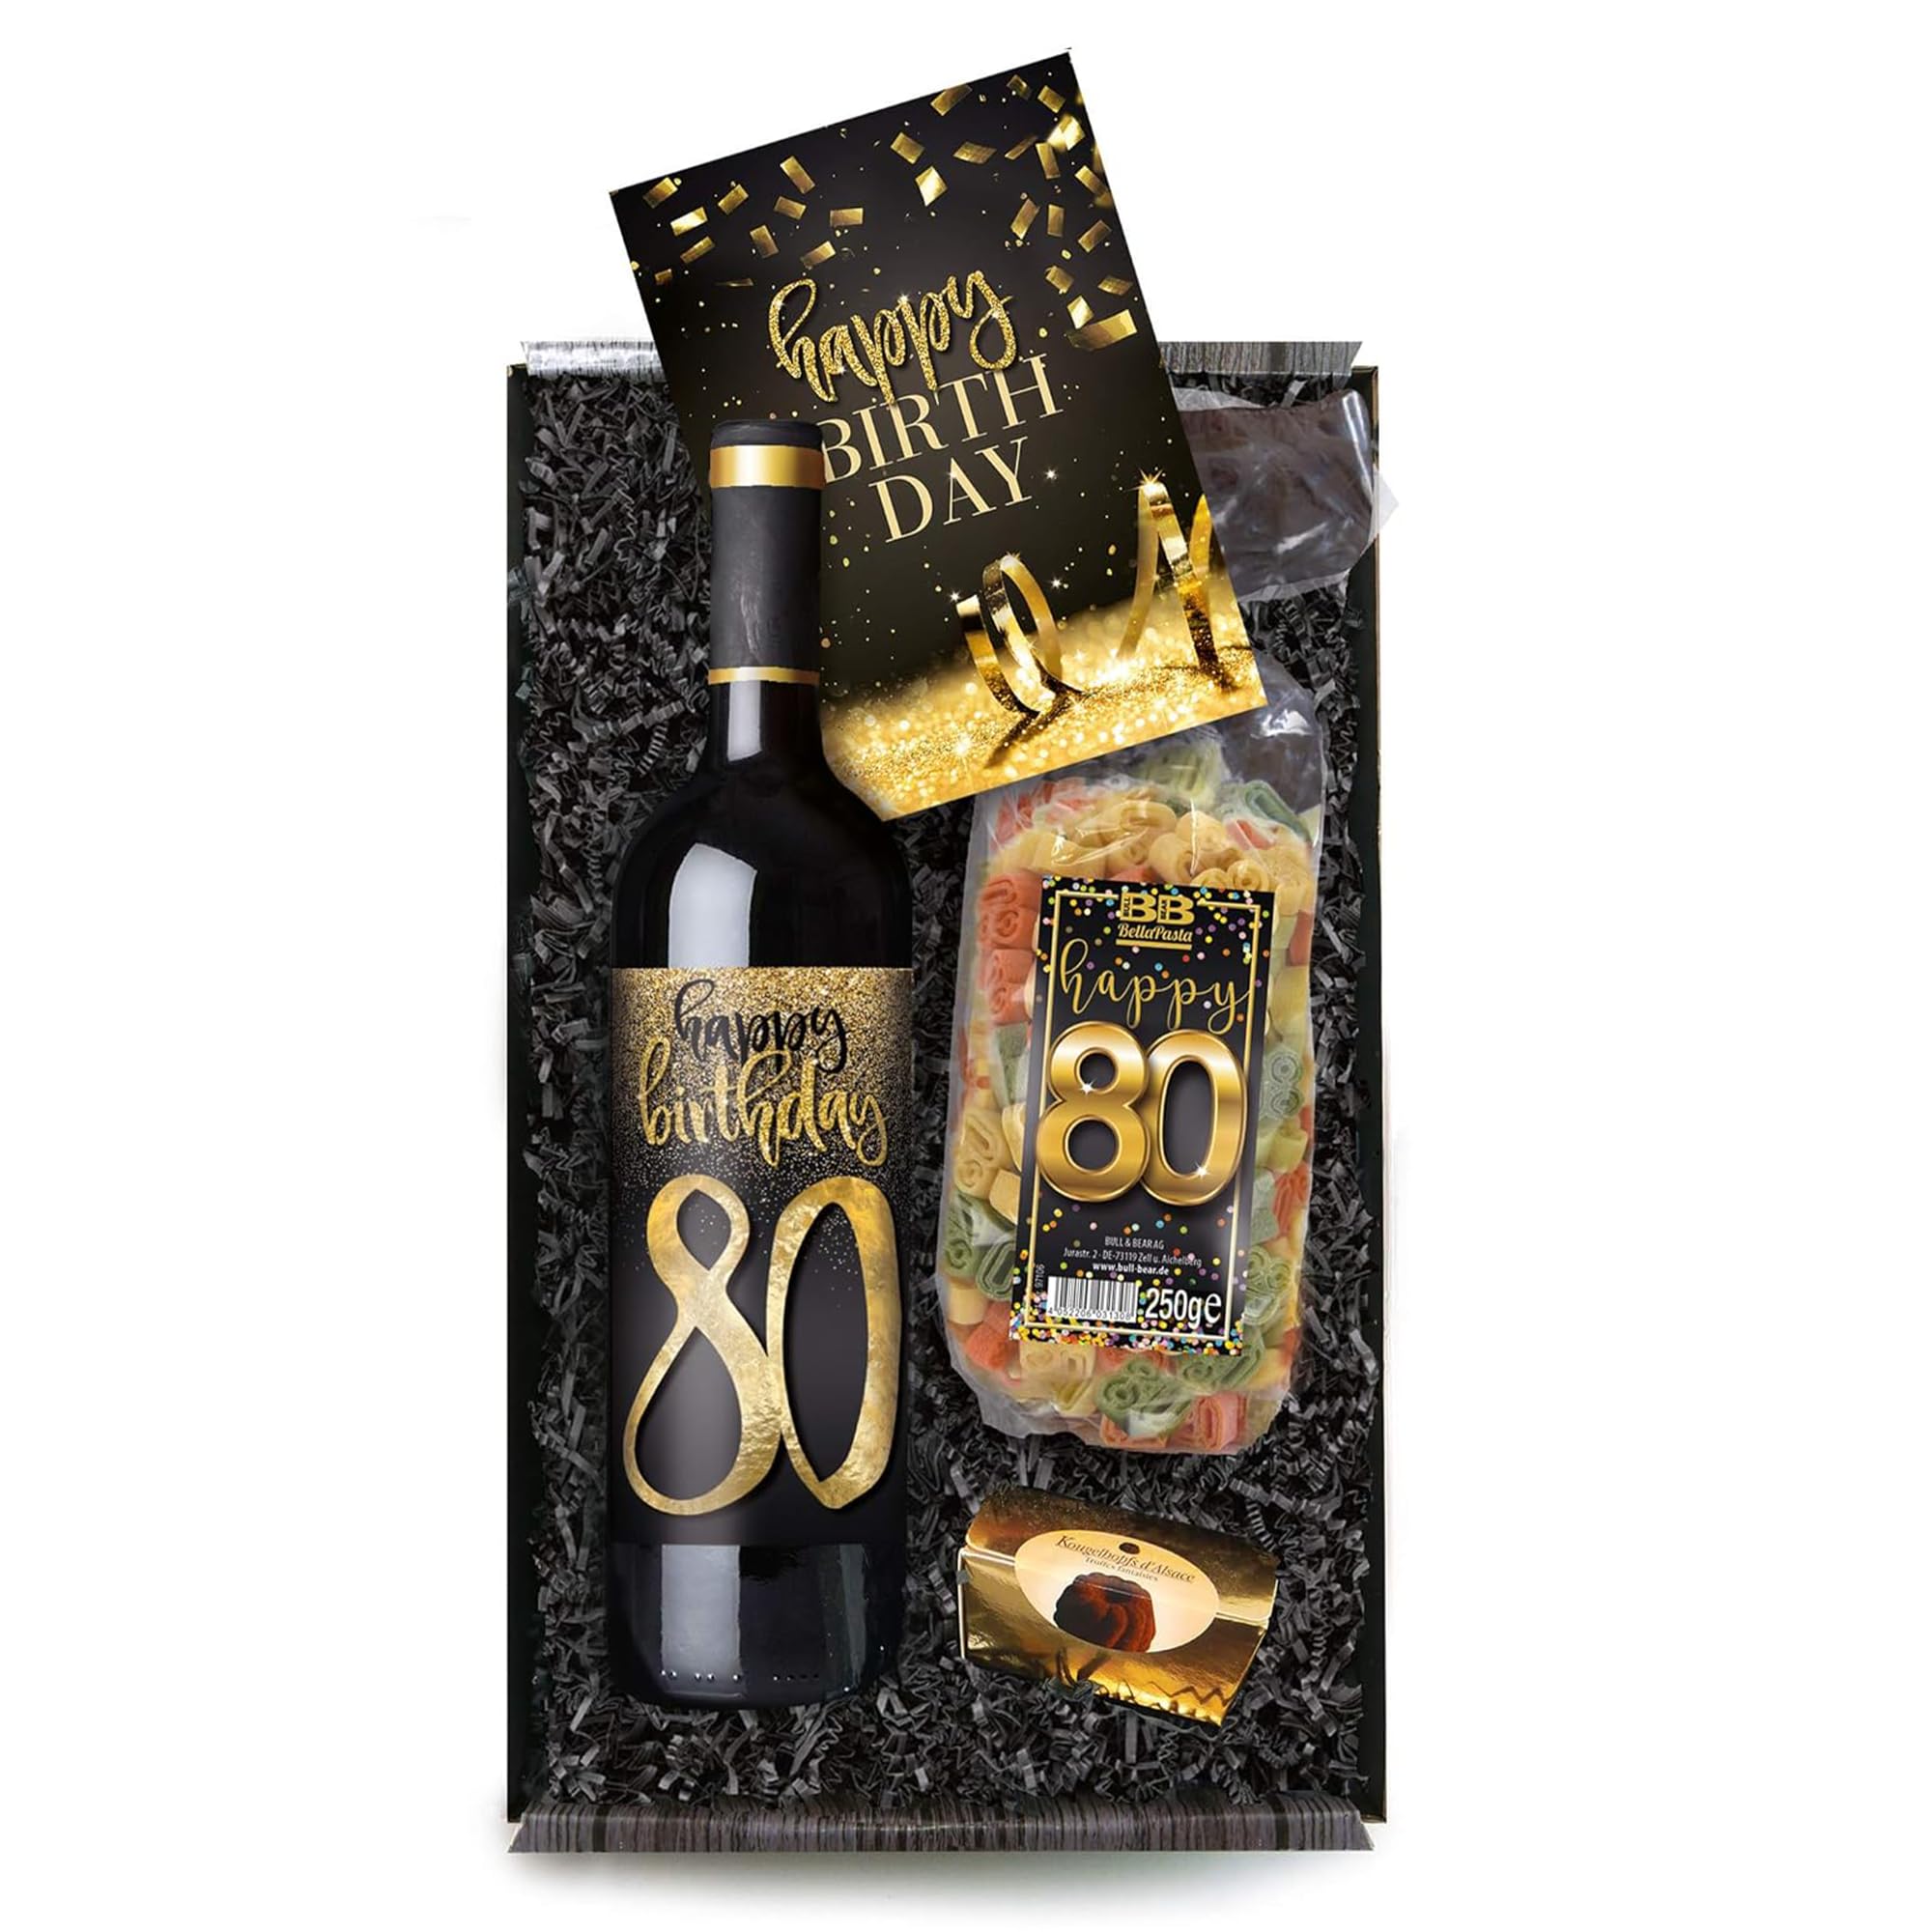 Bull & Bear Geschenkbox "Happy Birthday 80", Set mit Rotwein, Nudeln und Geburtstagskarte, Geschenk zum 80. Geburtstag